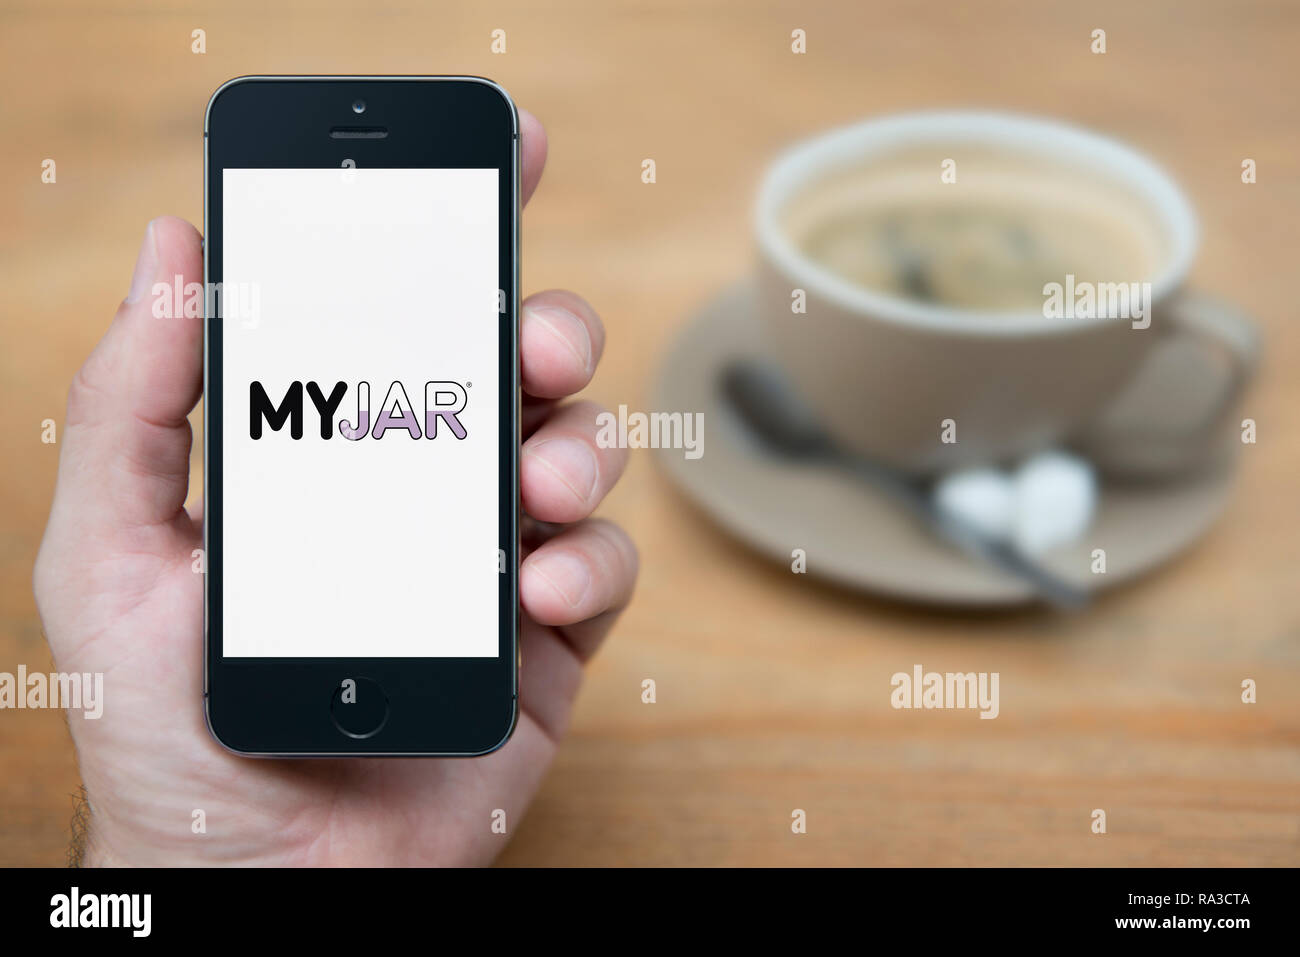 Un uomo guarda al suo iPhone che visualizza il logo MyJar (solo uso editoriale). Foto Stock